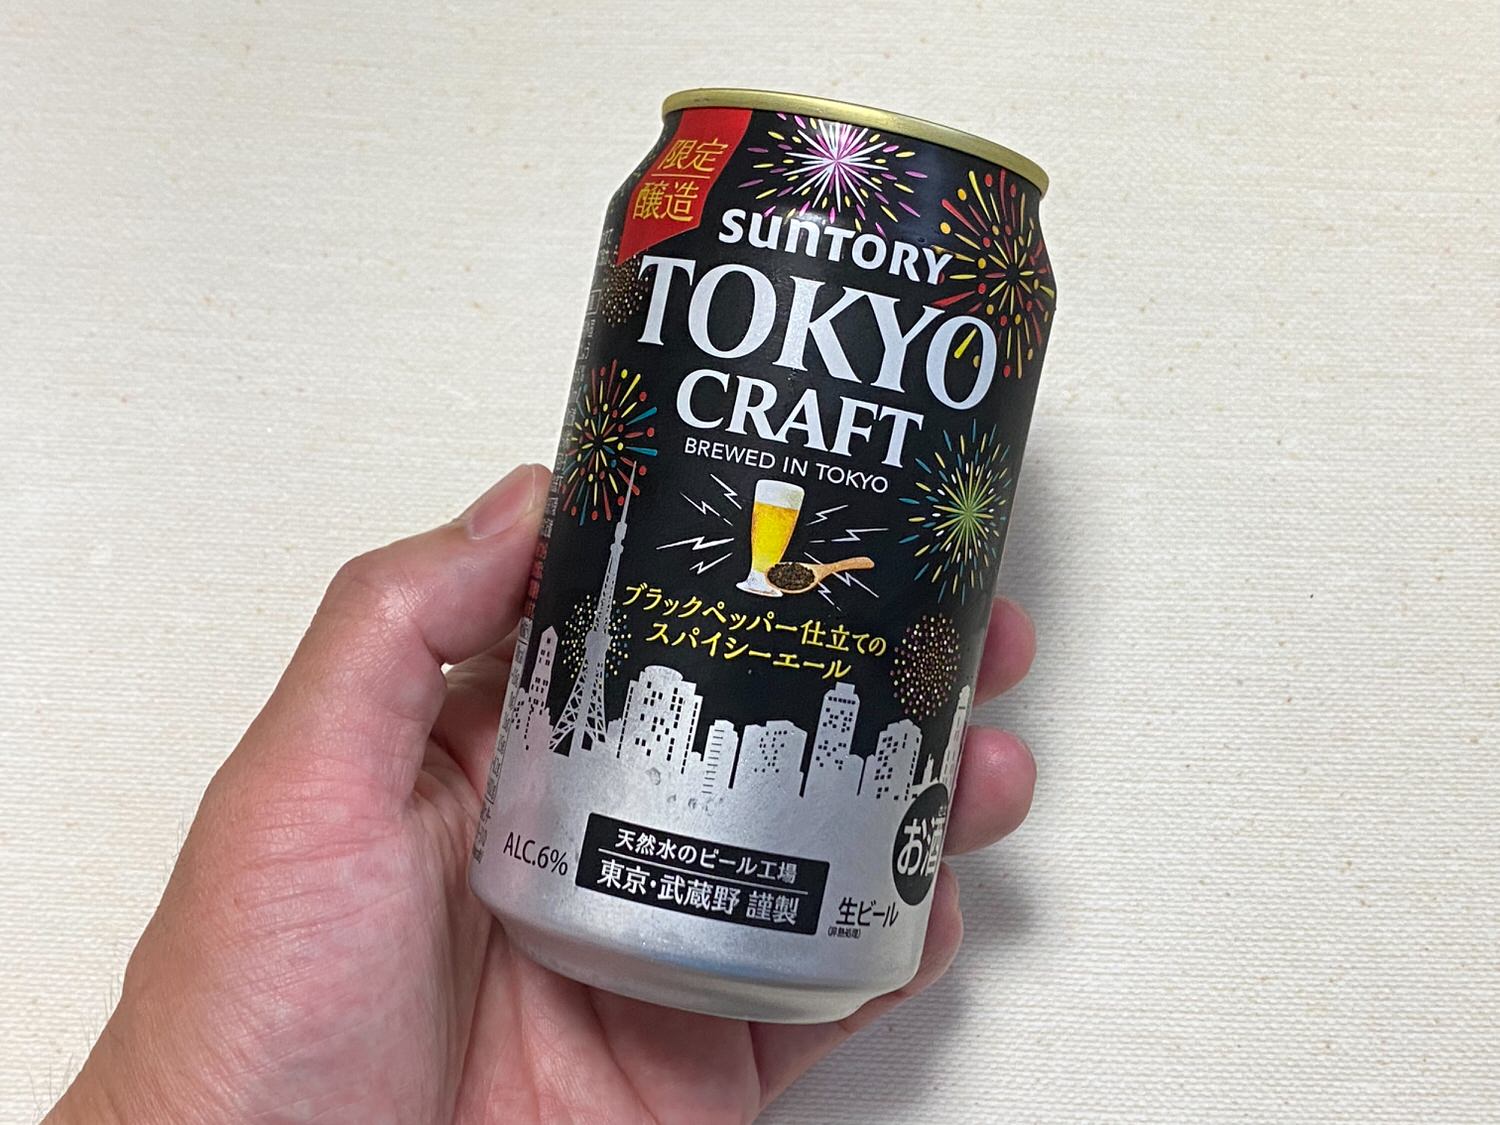 Tokyo craft spicy ale 07 04